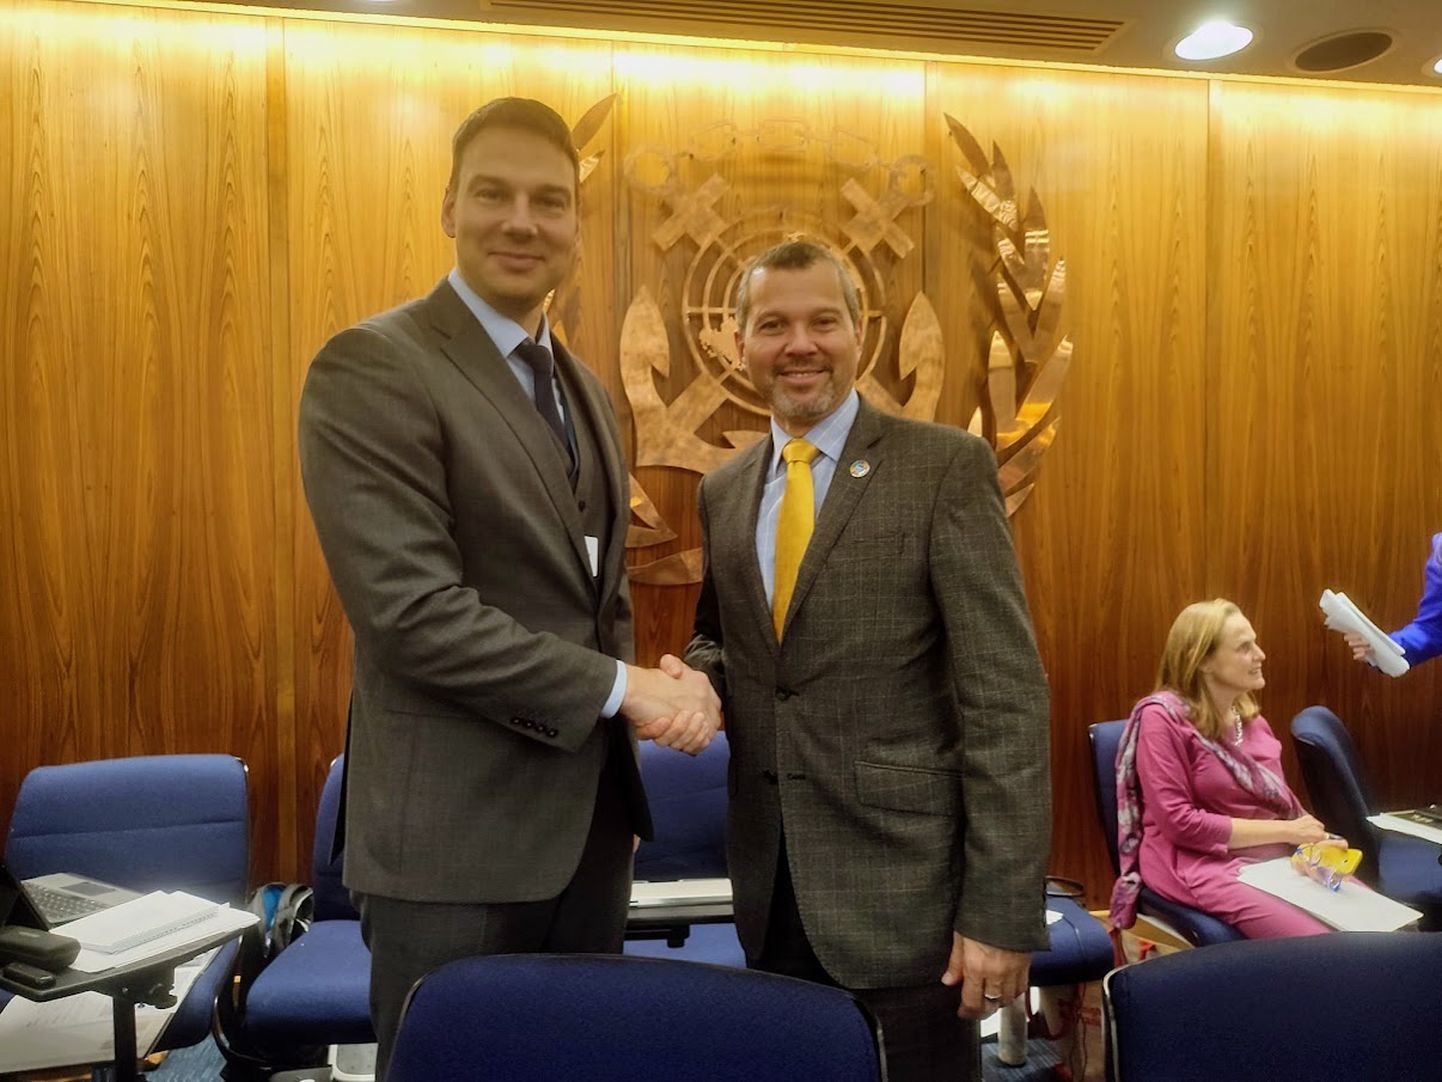 Kliimaministeeriumi merenduse ja veekeskkonna asekantsler Kaupo Läänerand õnnitleb IMO uut peasekretäri Arsenio Dominguez Velascot.